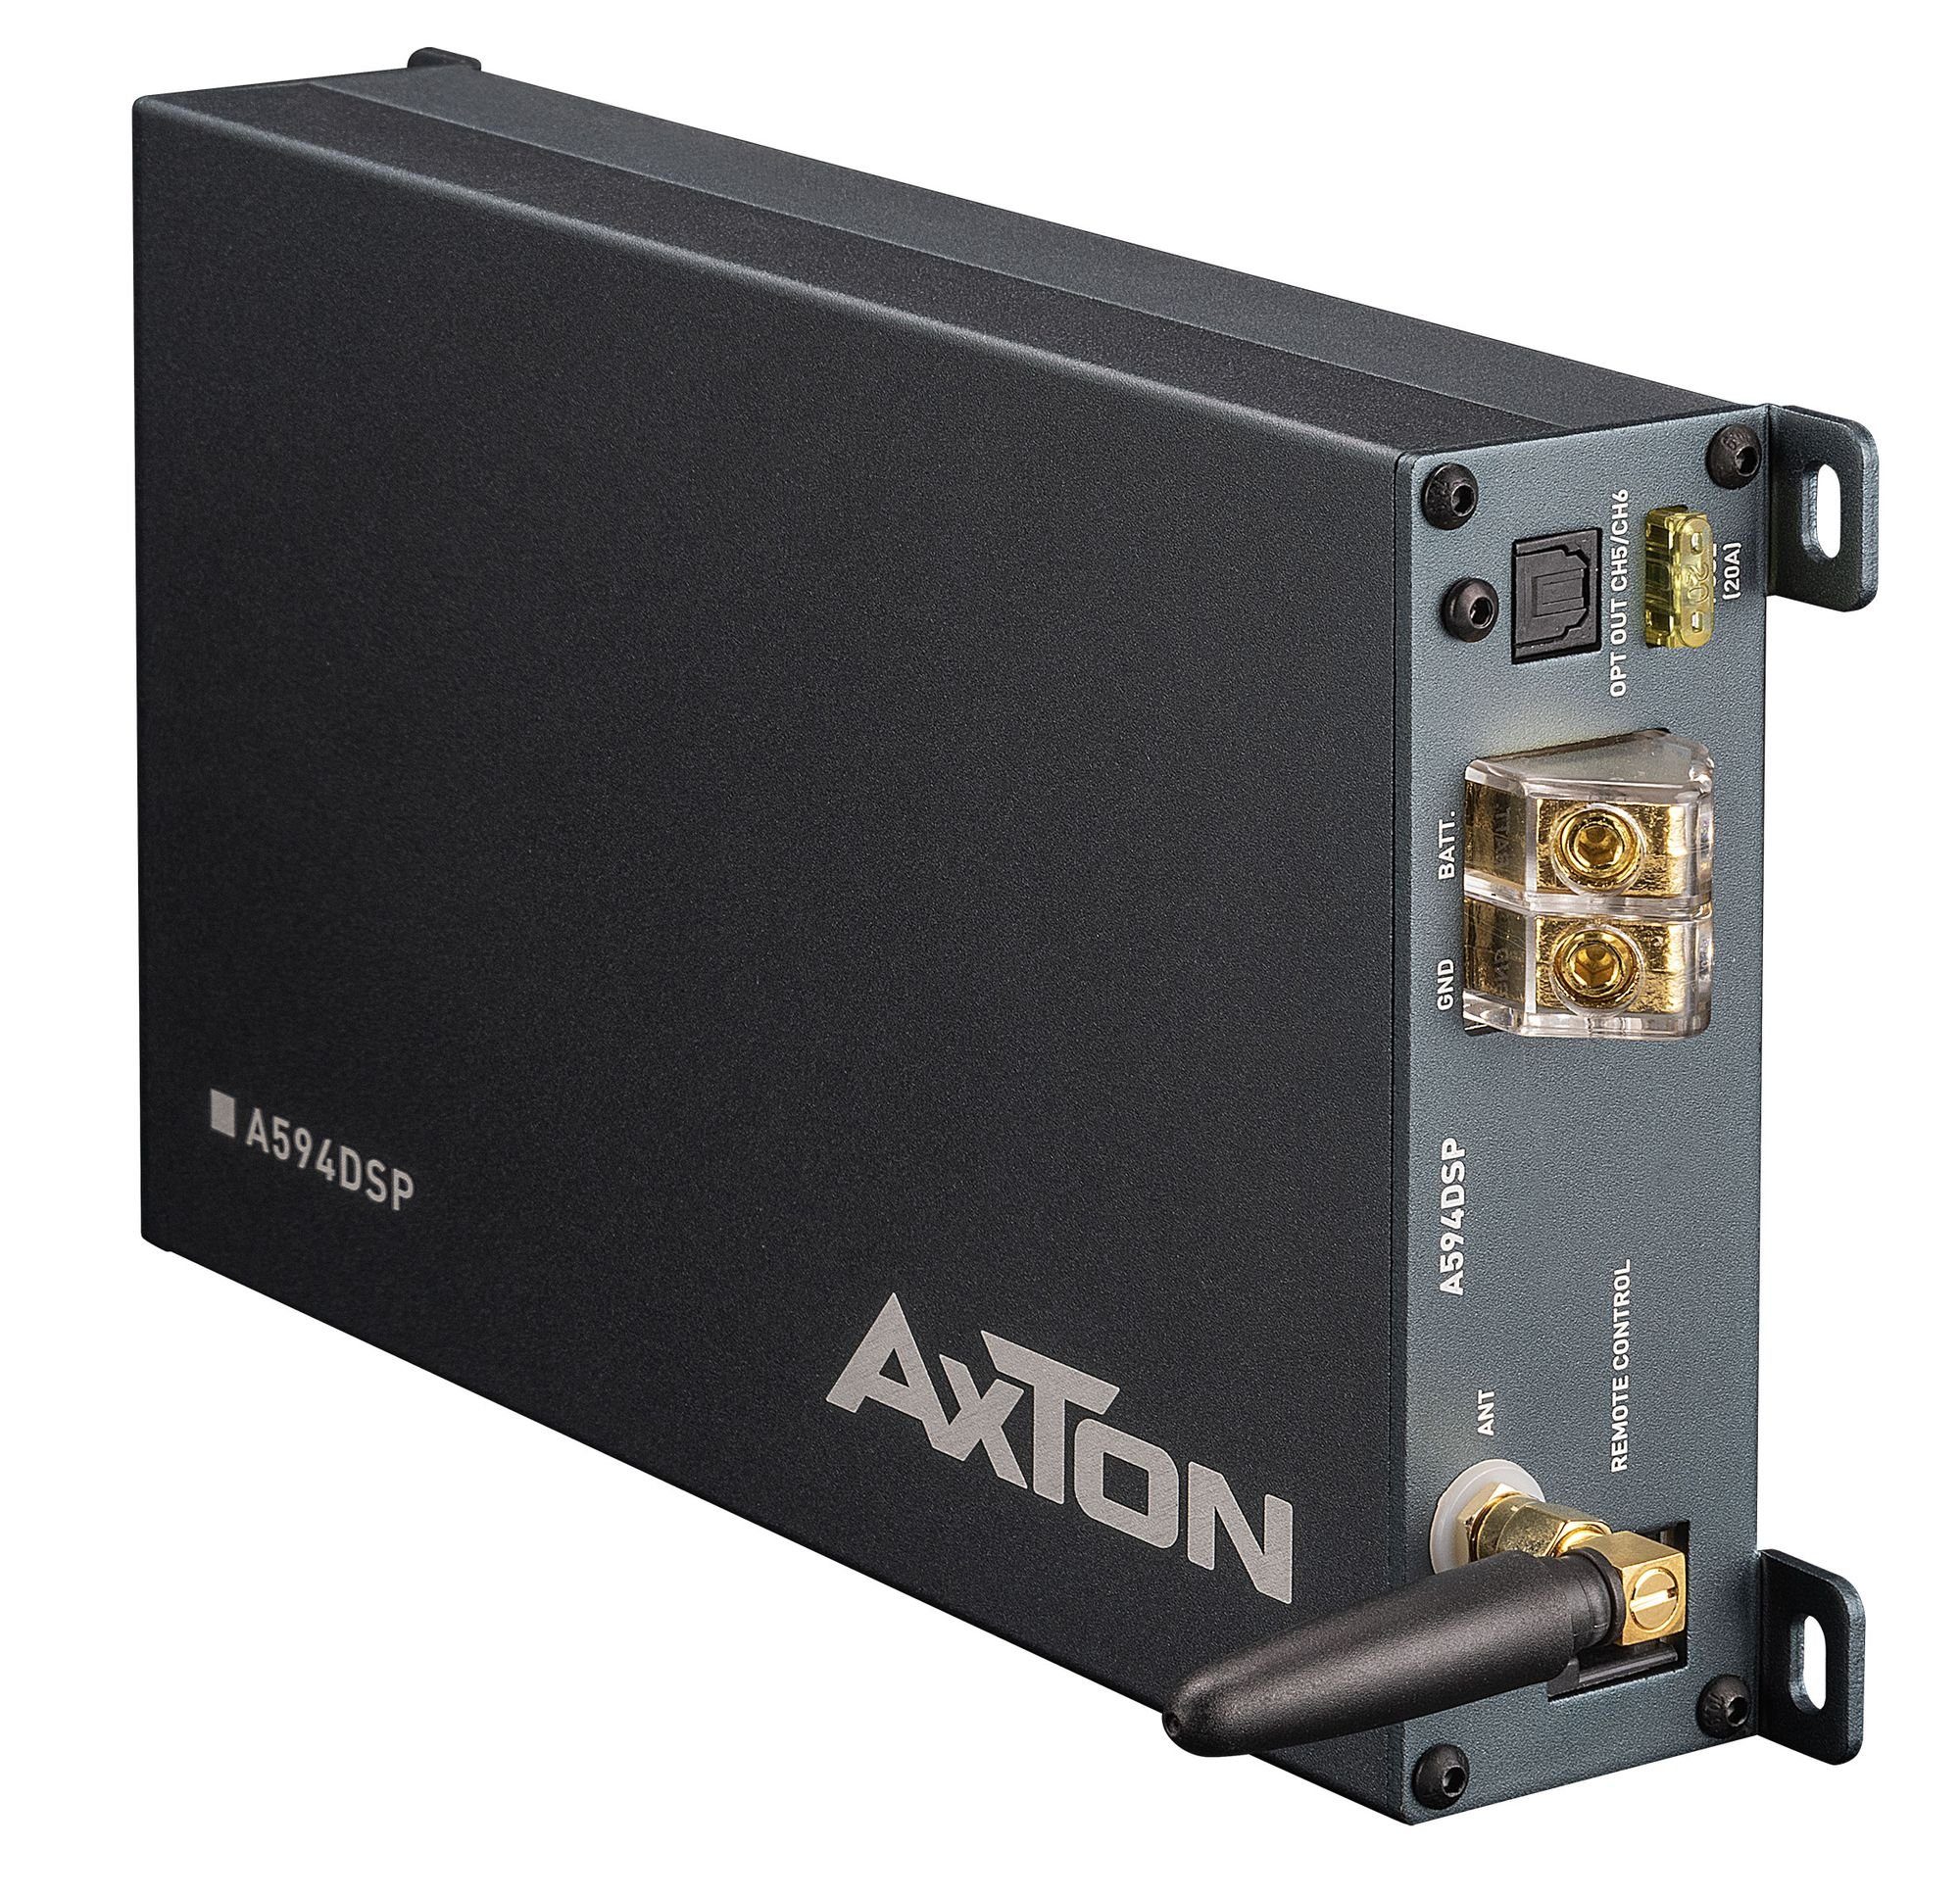 DSP-Verstärker fähig Verstärker Axton Watt Hi-Res 6 Kanal 4x150 A594DSP